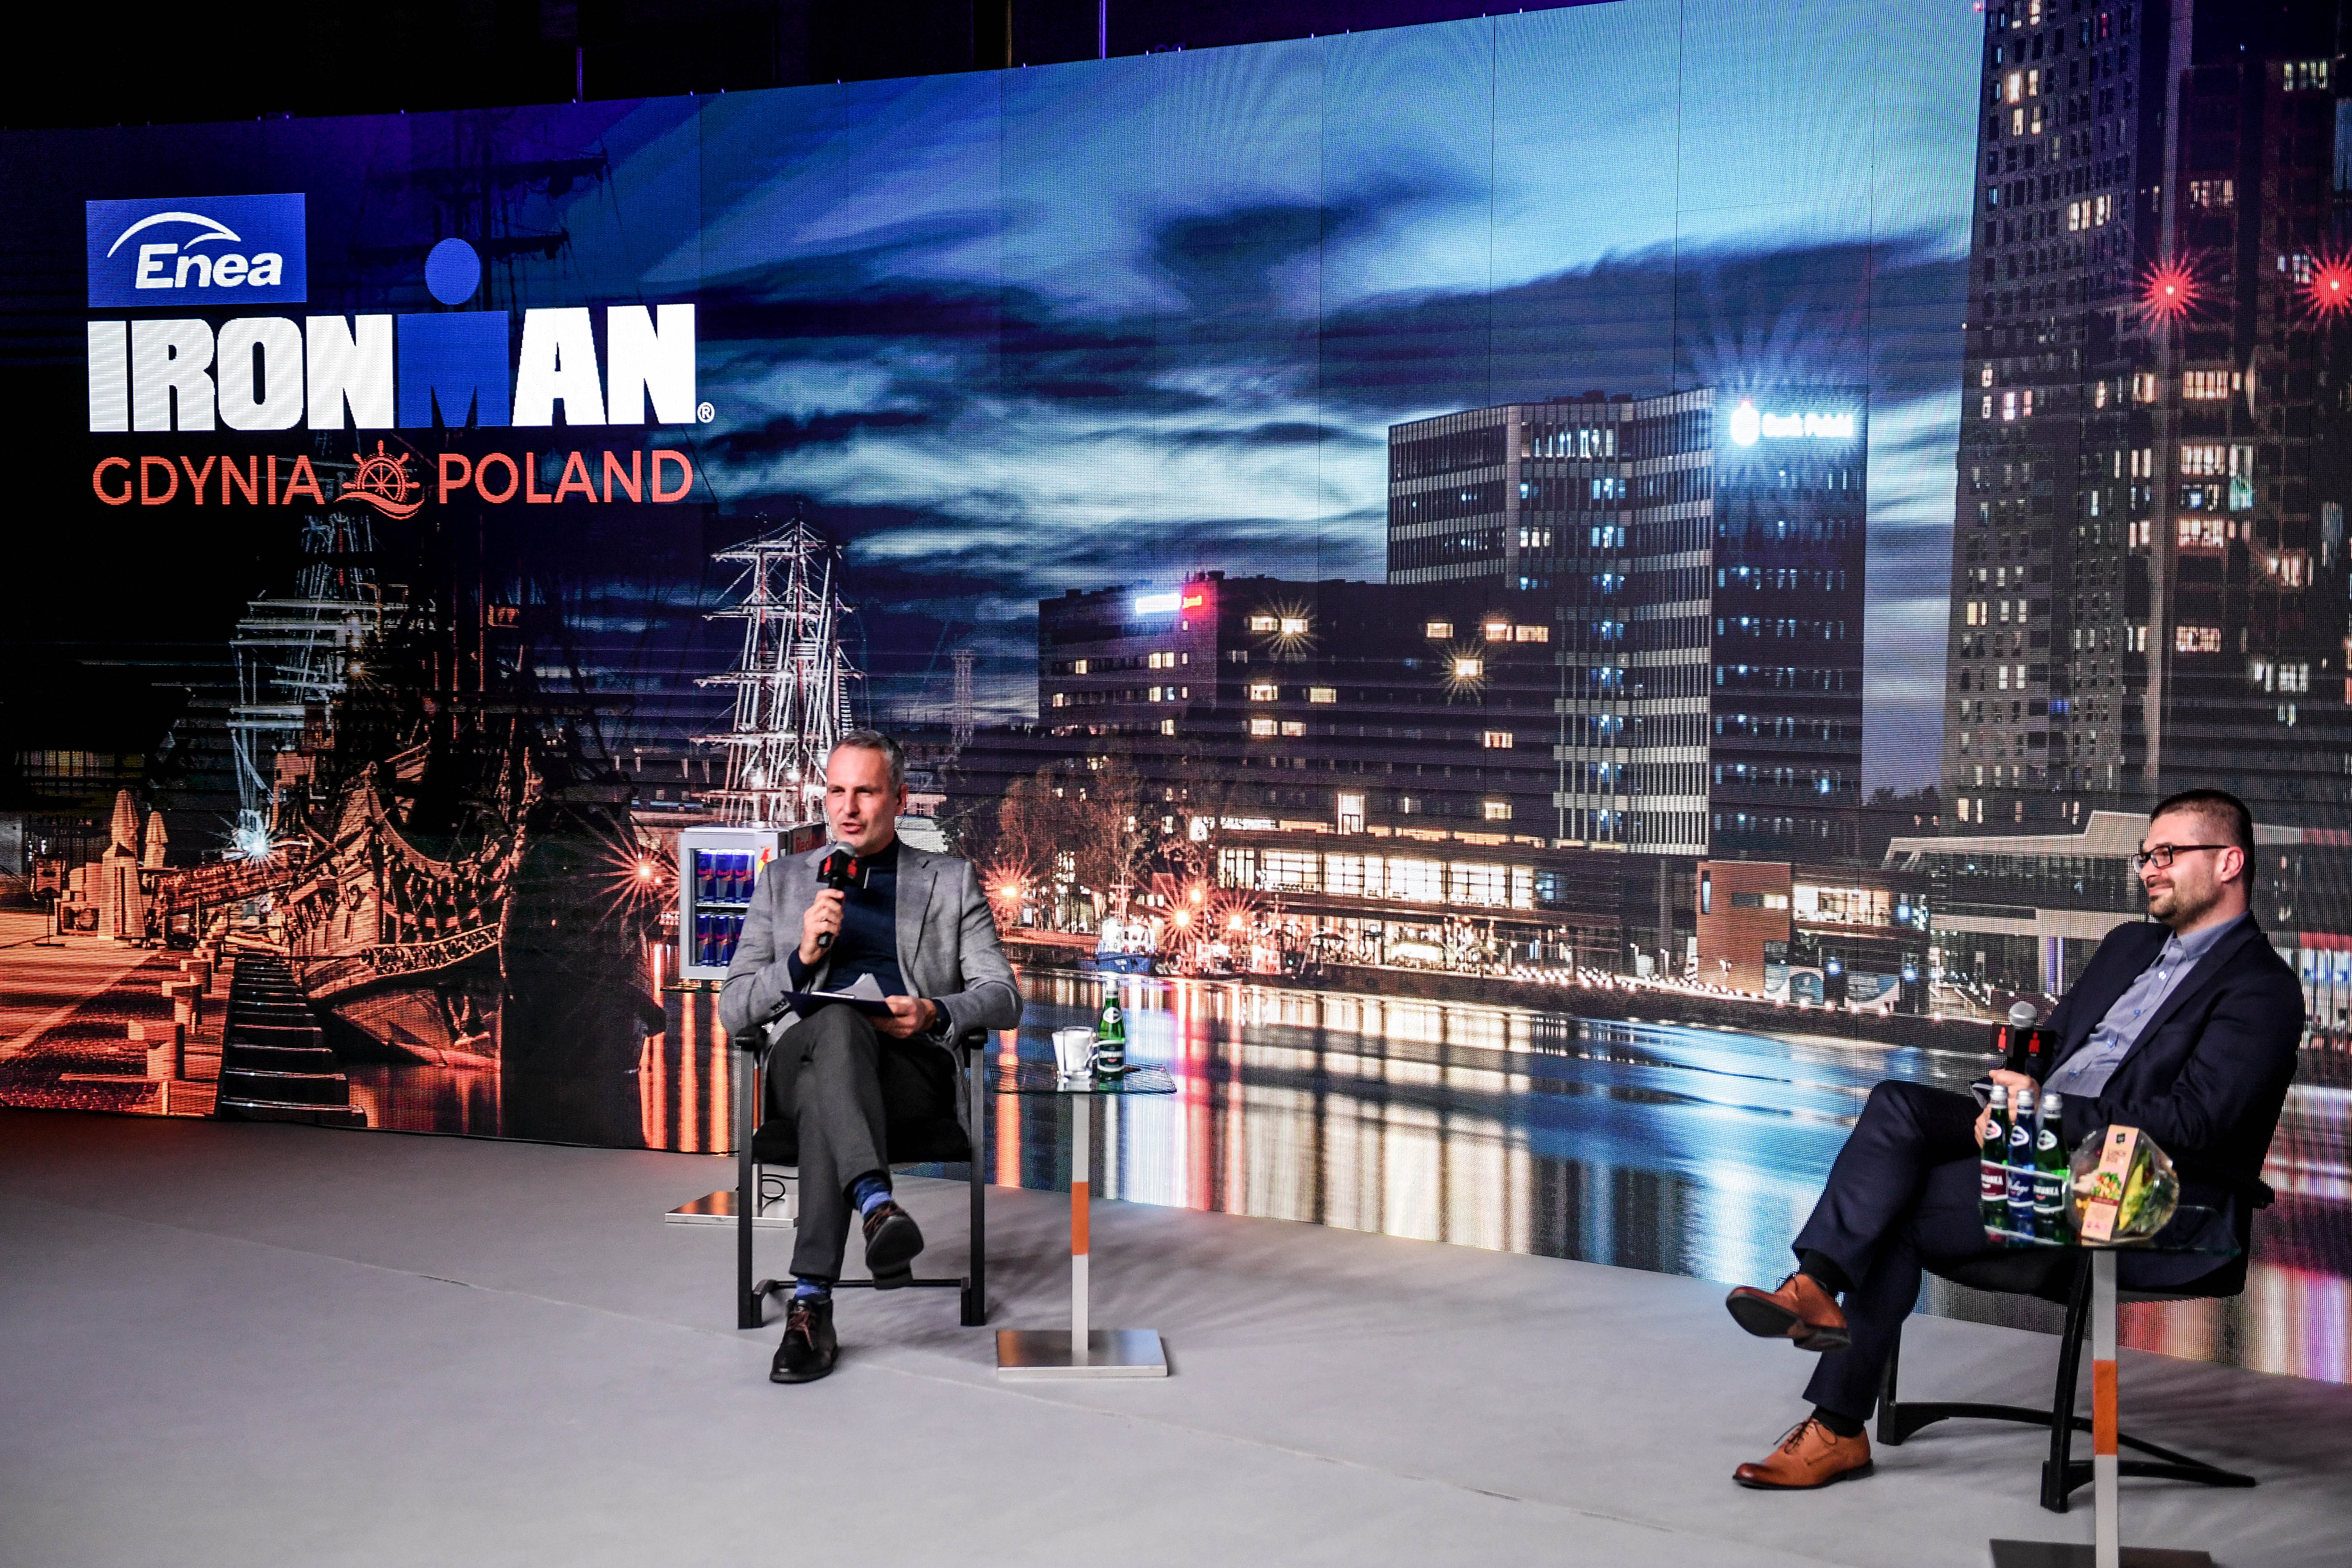 Na zdjęciu widzimy prowadzącego konferencję dziennikarza Jacka Kurowskiego oraz dyrektora zawodów Michała Drelicha. Obaj znajdują się na wielkiej scenie, siedząc na krzesłach.